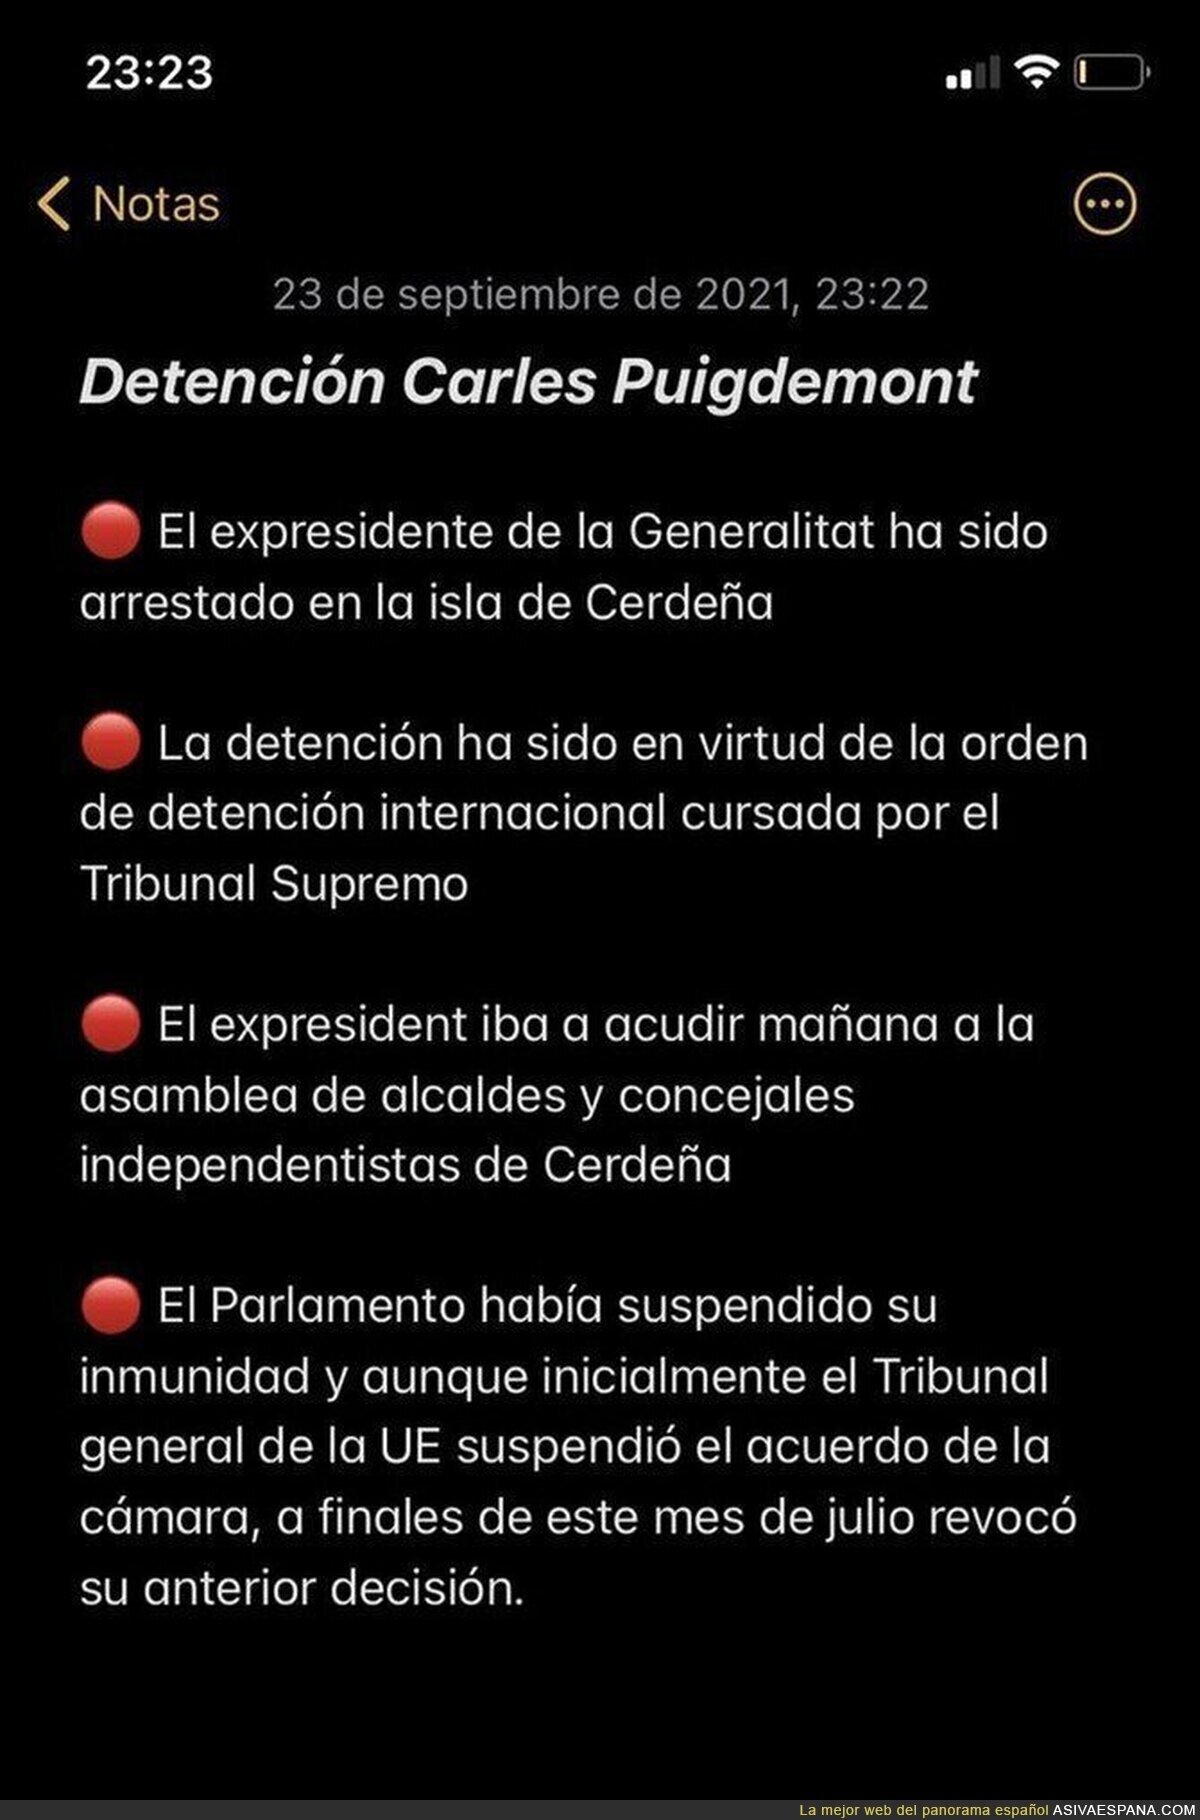 ¿Qué sabemos en este momento sobre la detención de Carles Puigdemont?, por @LaVanguardia